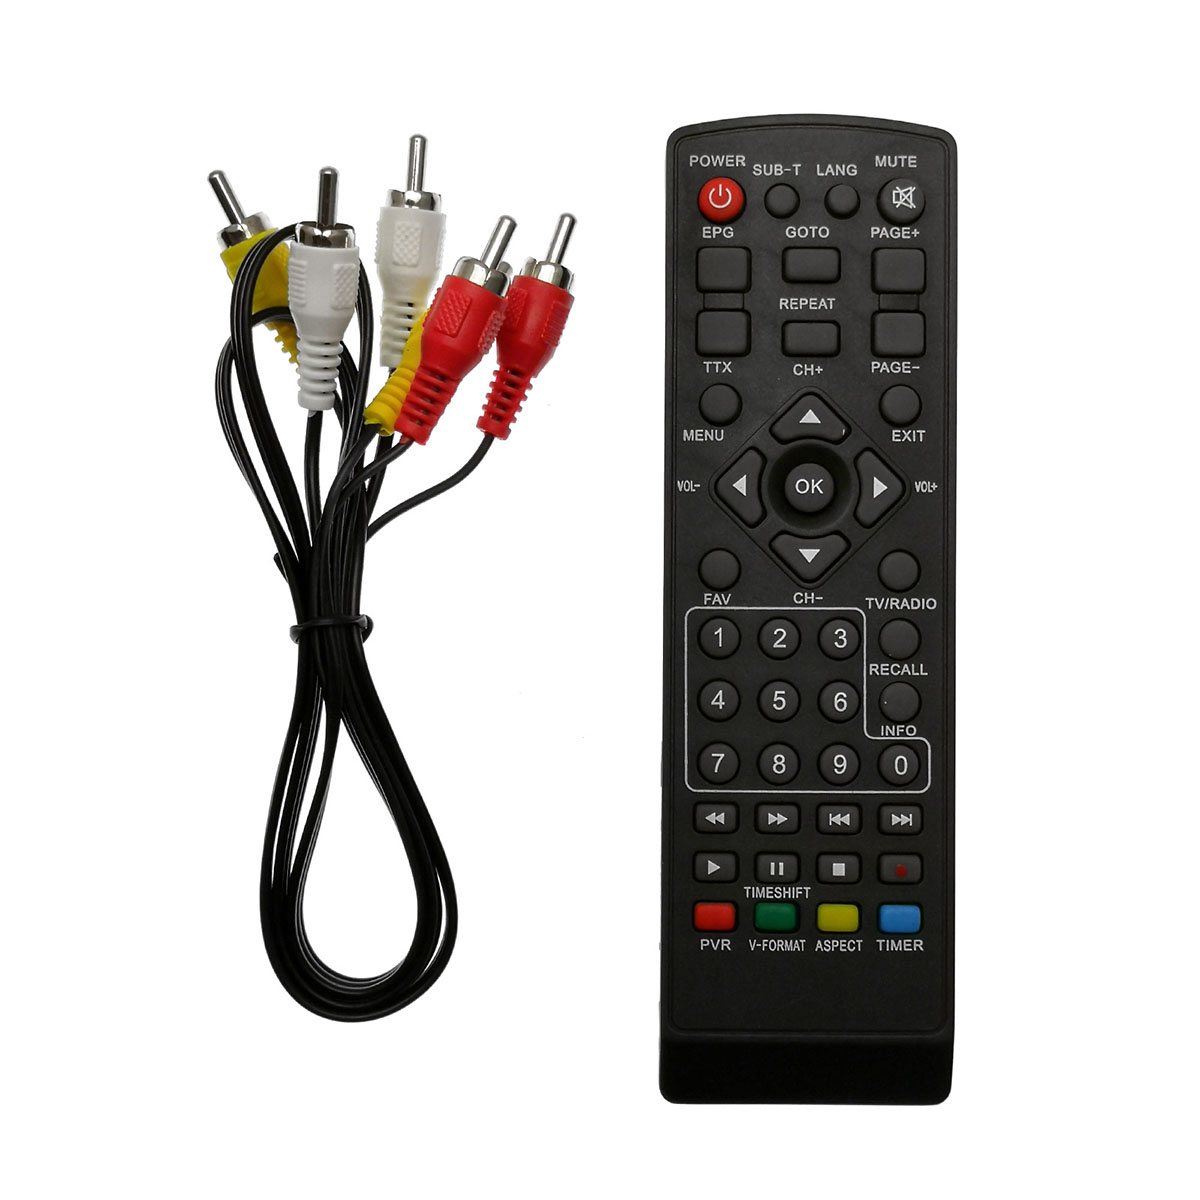 Цифровой эфирный приемник, ТВ приставка MRM MR-165 DVB-T2, цвет черный